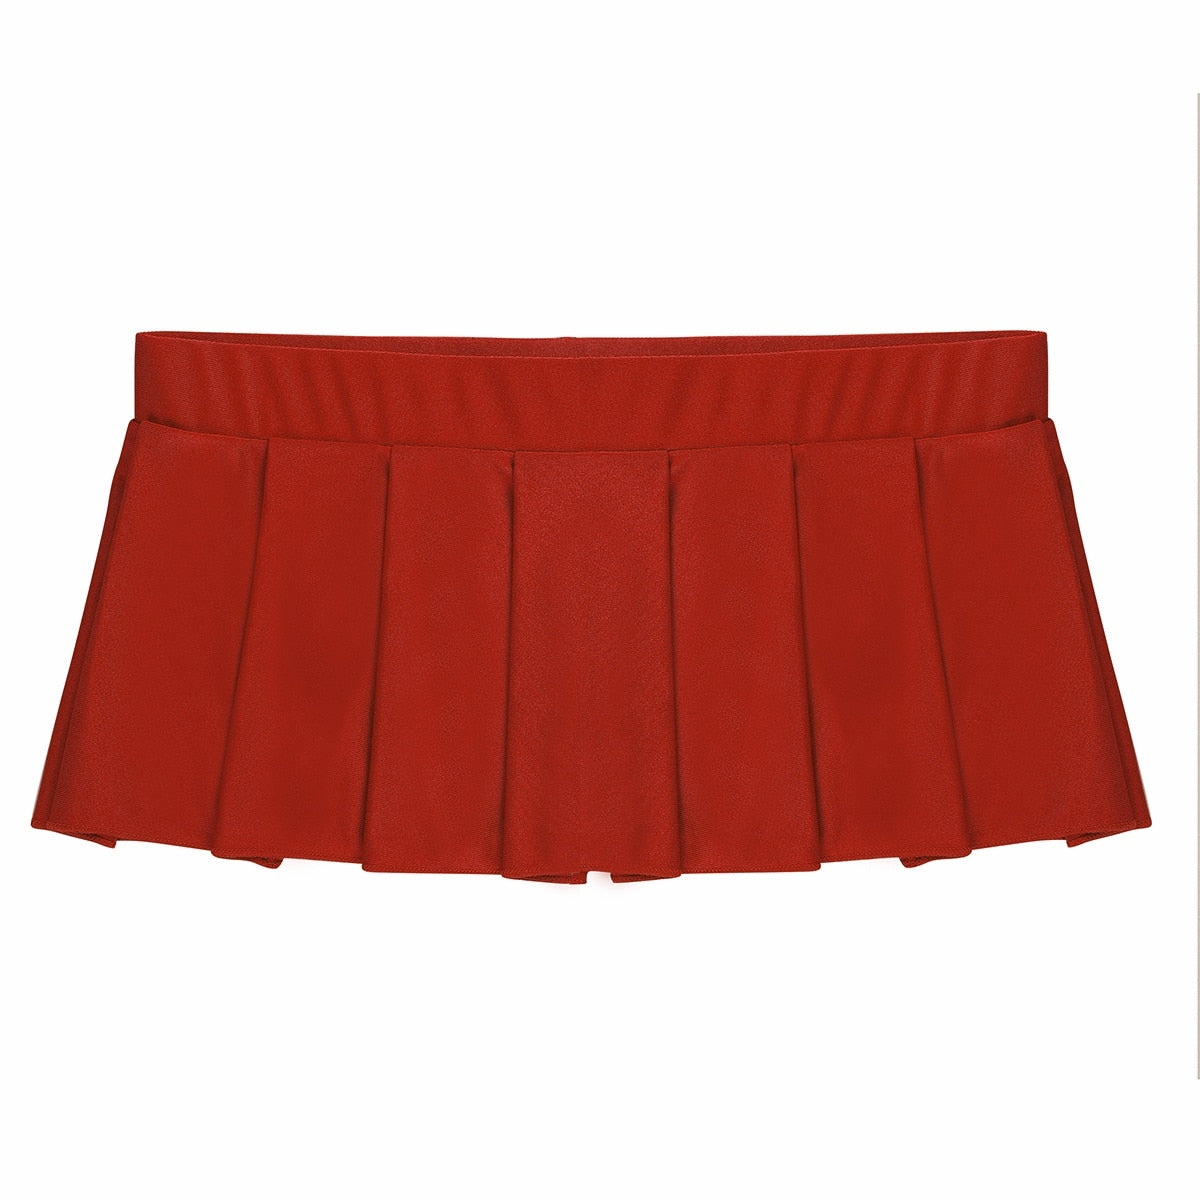 Schoolgirl Uniform Miniskirt